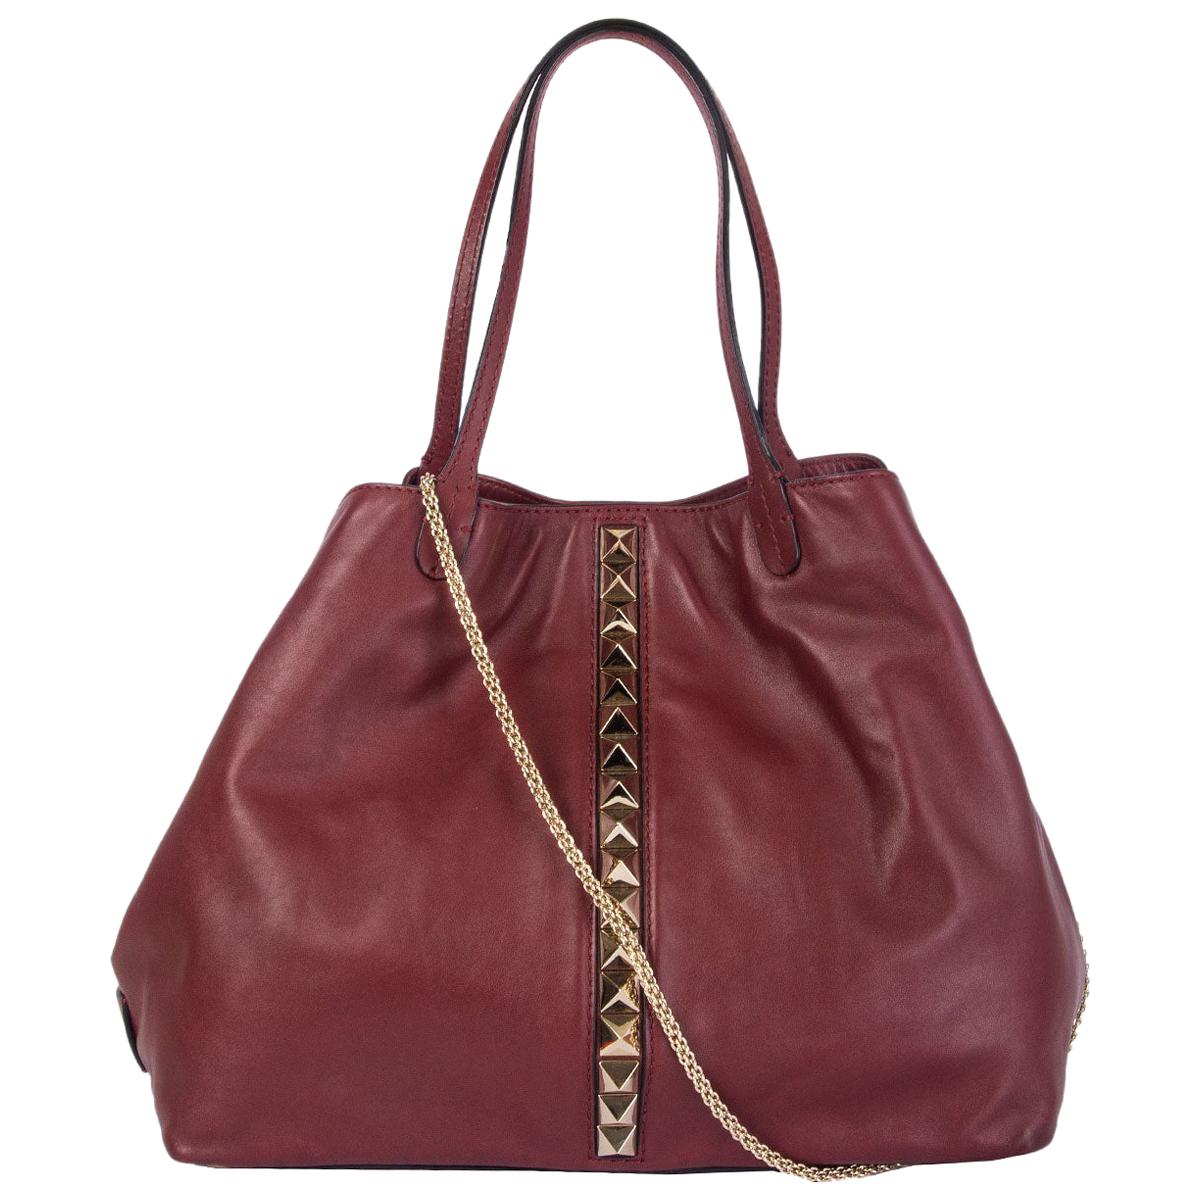 VALENTINO burgundy leather Rockstud VA VA VOOM LARGE TOTE Bag